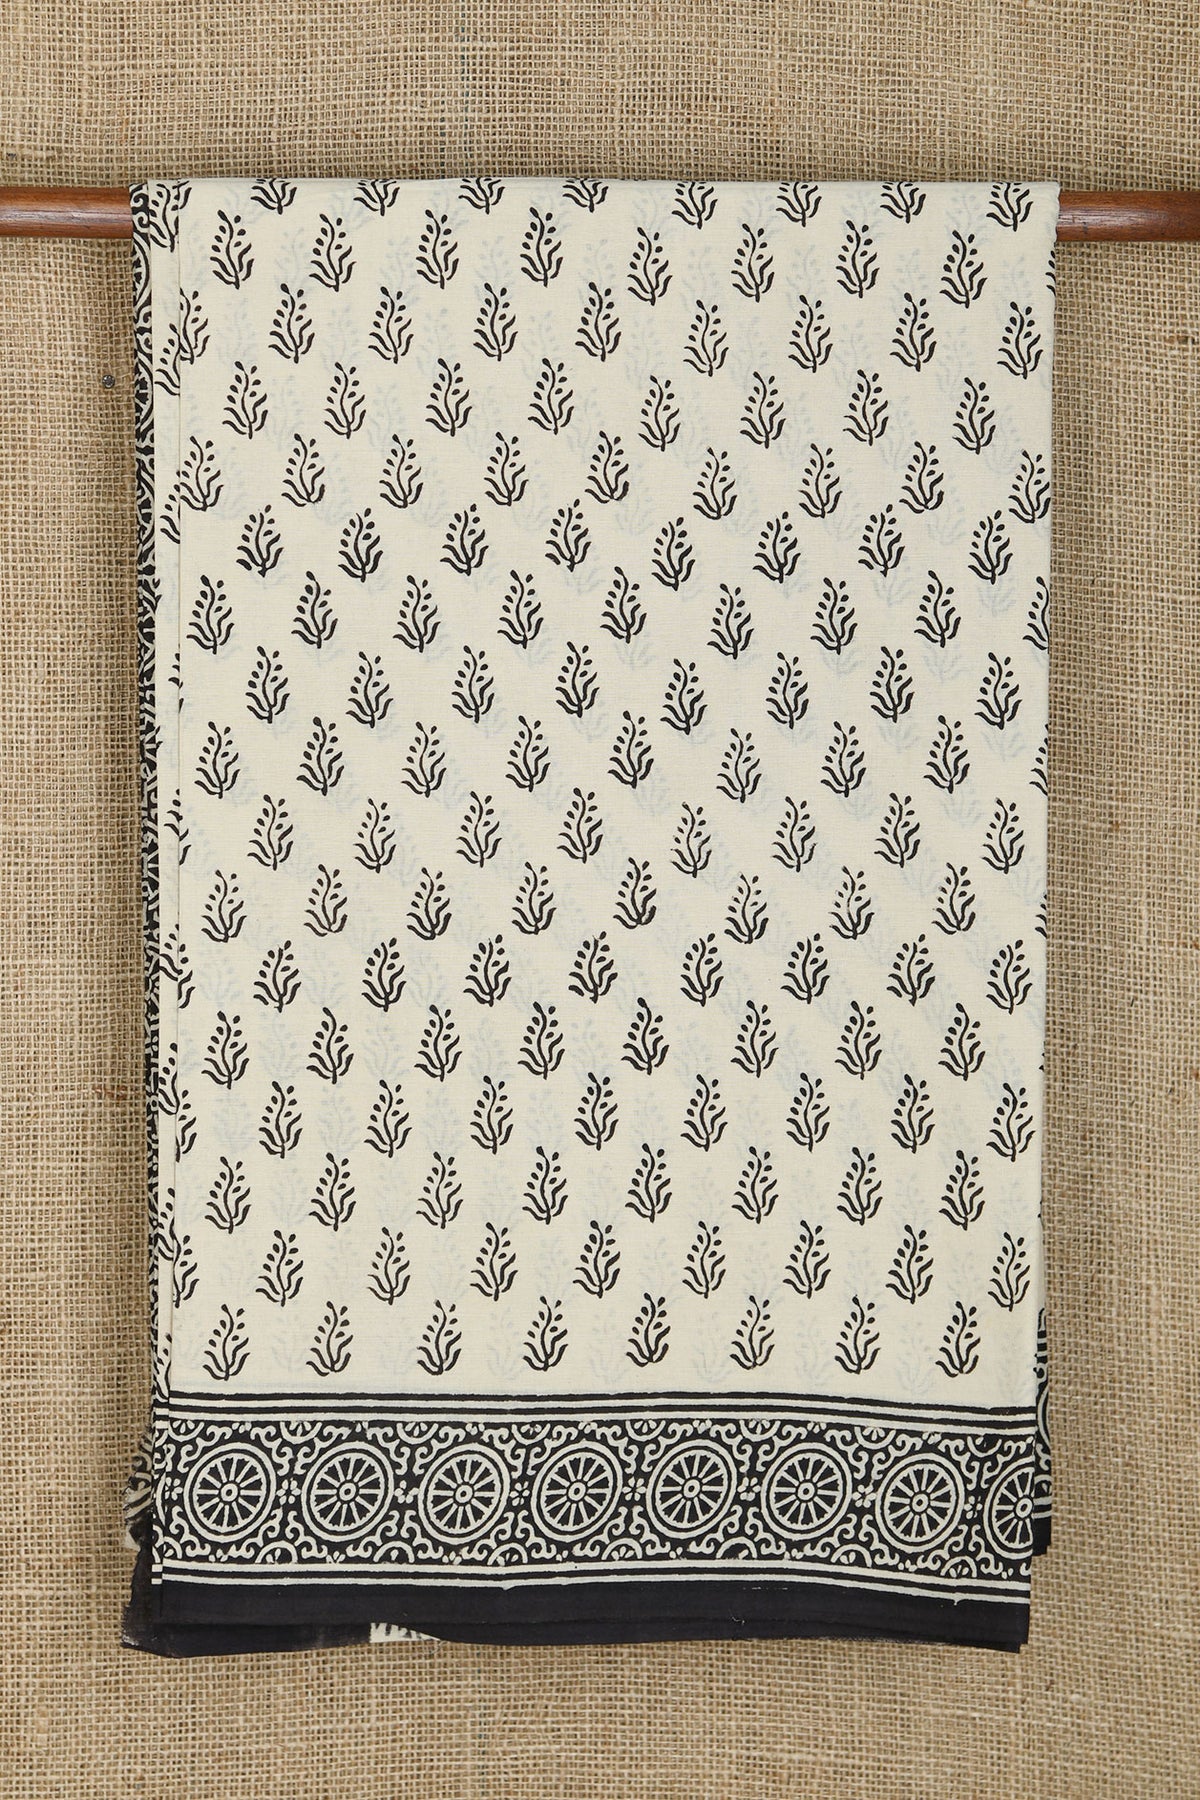 Floral Design Cream Color Jaipur Printed Cotton Saree